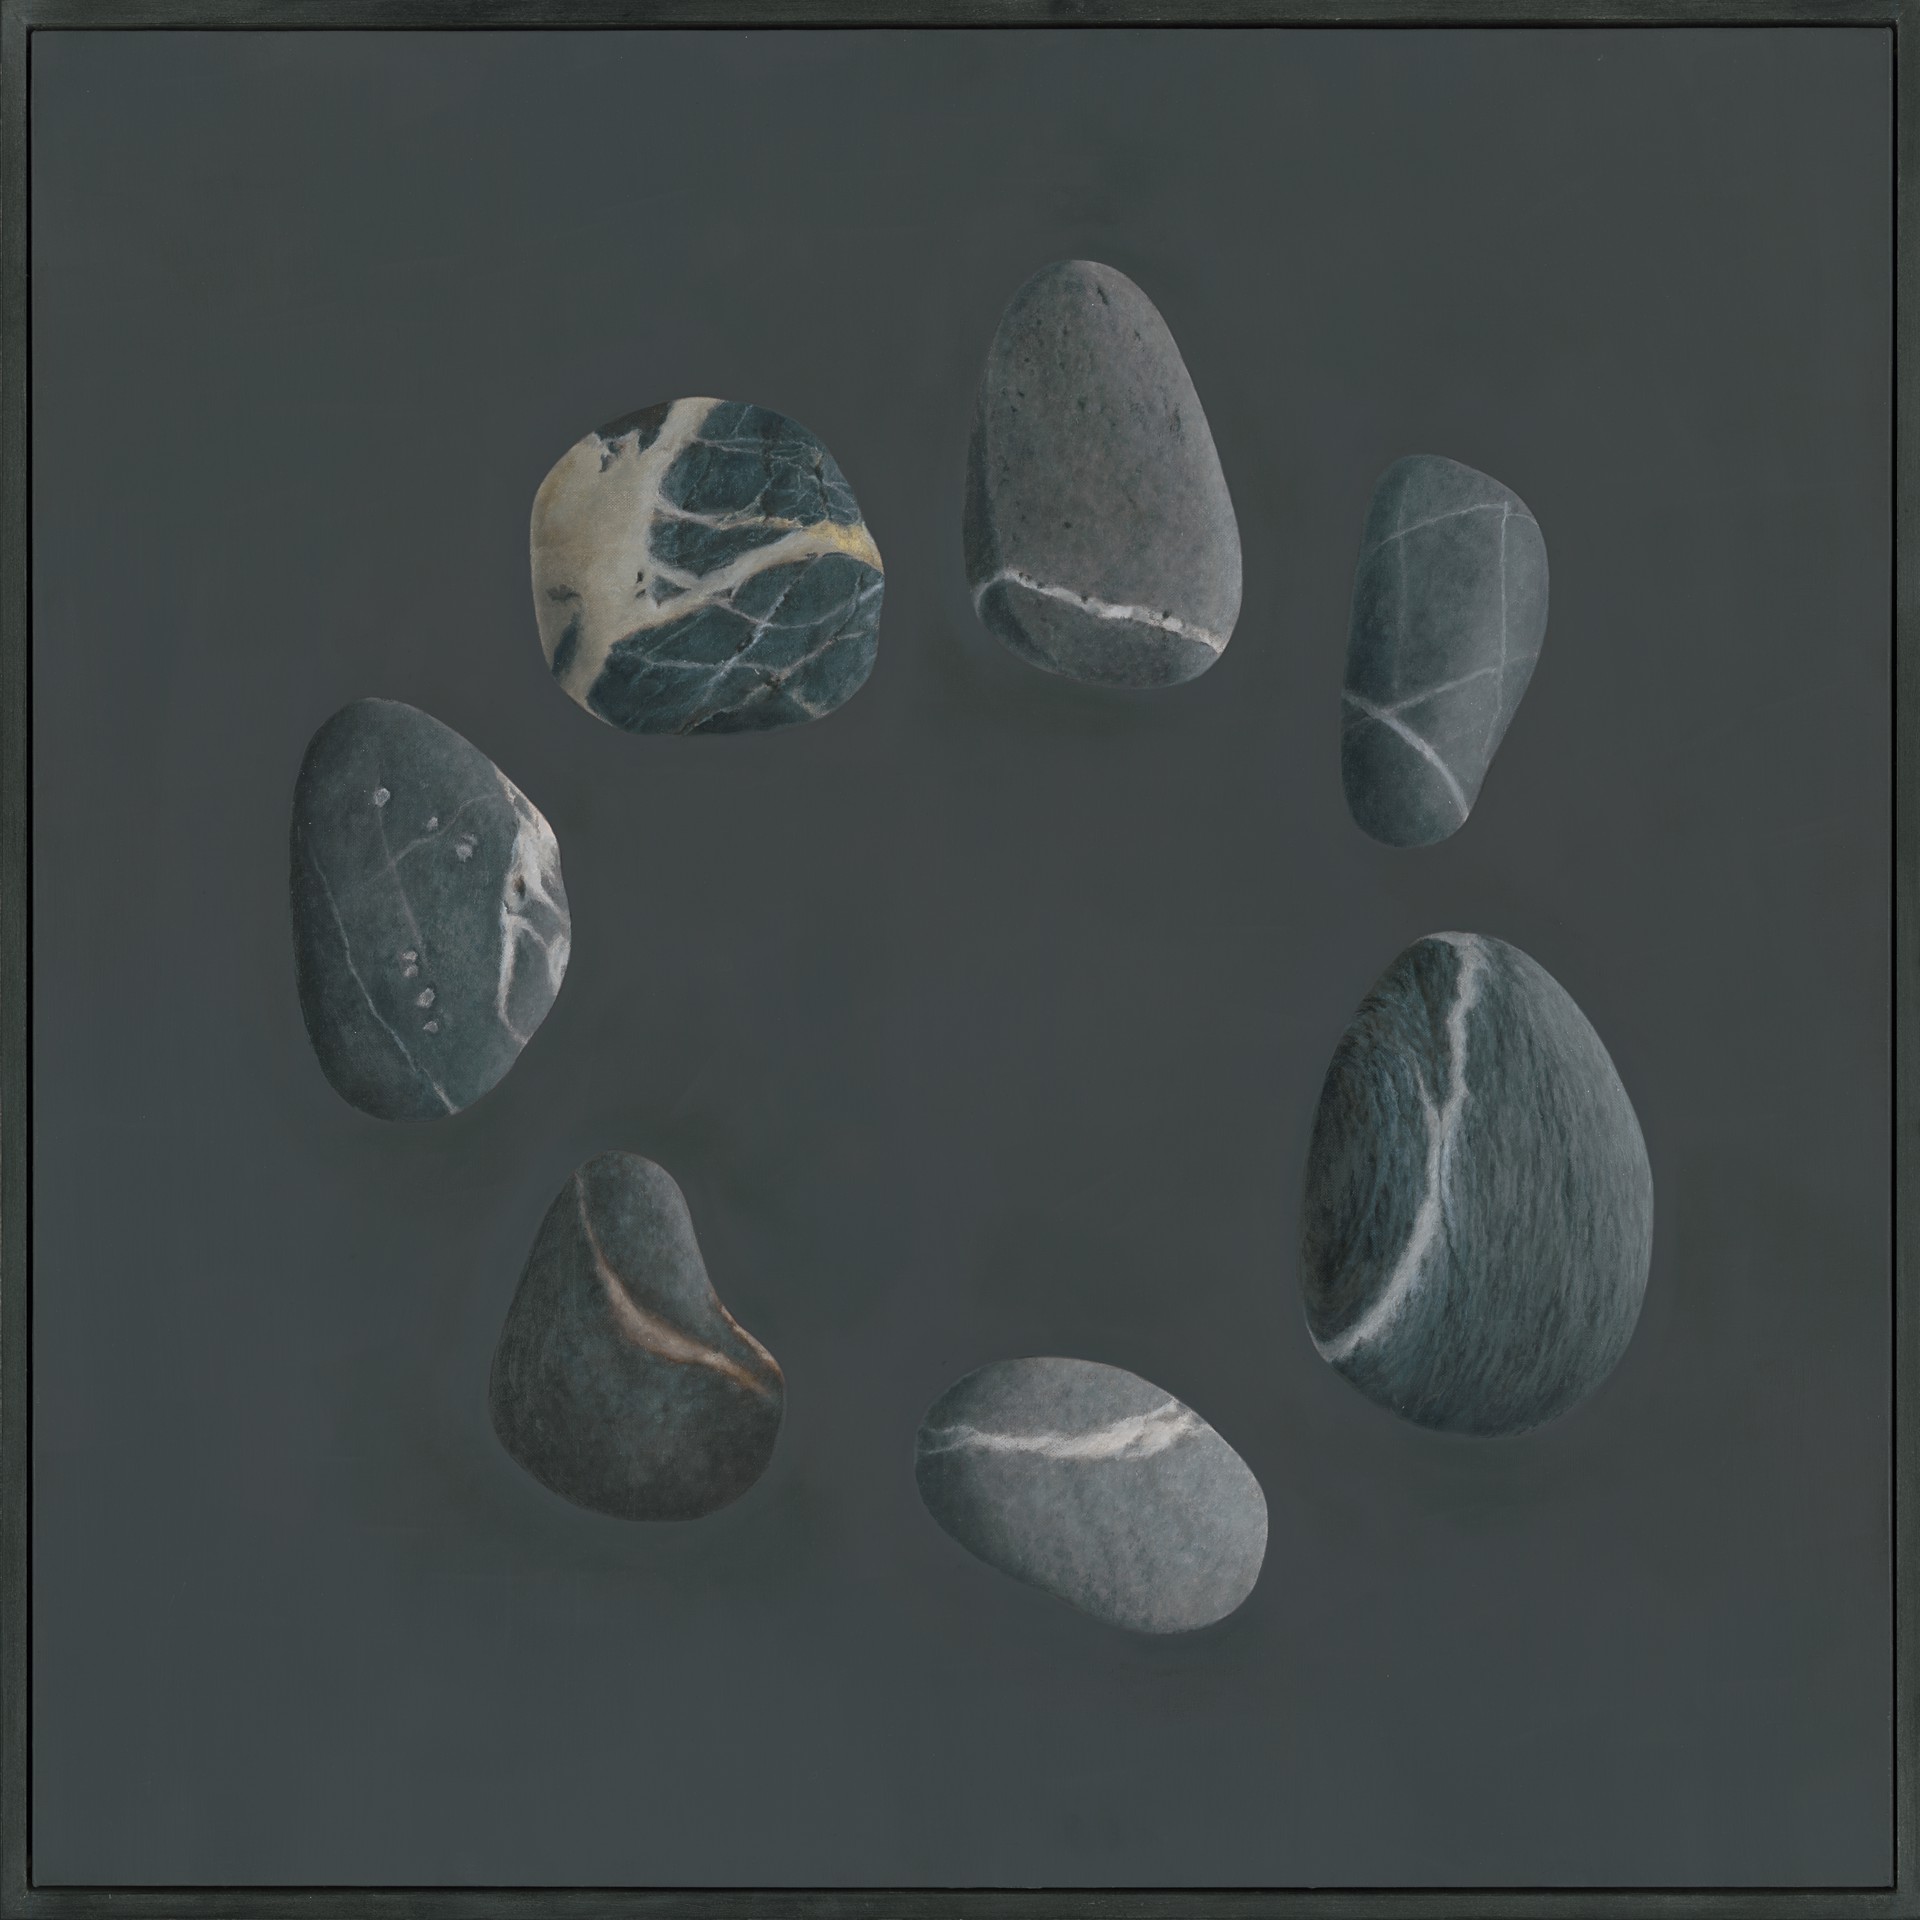 Veined Stone Circle by Sarah Verardo